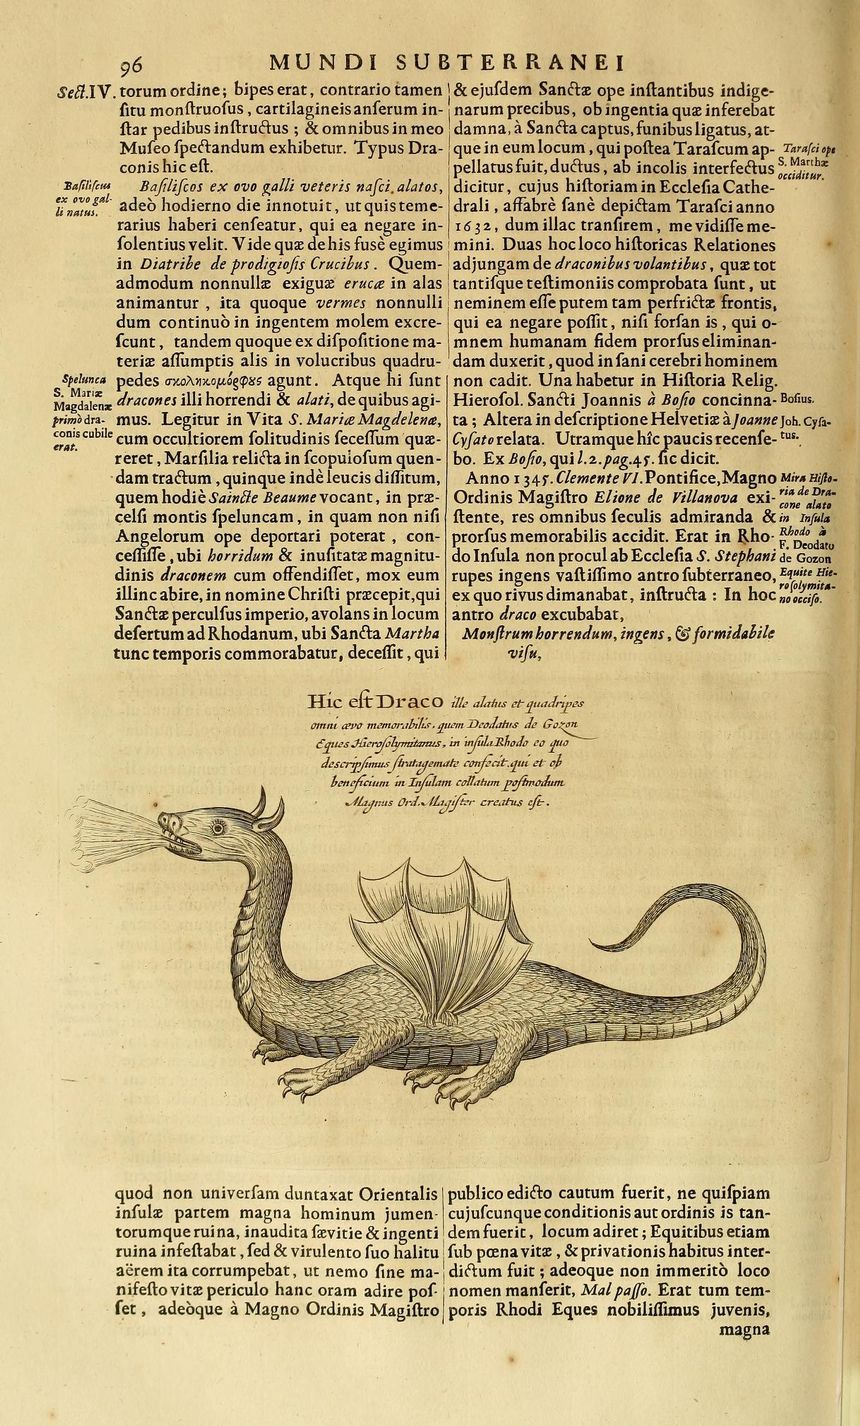 "Hic est draco" tłum. : oto jest smok,
 il.  z dzieła przyrodnika i filologa A. Kirchera “Mundus subterraneus…” z 1678 roku